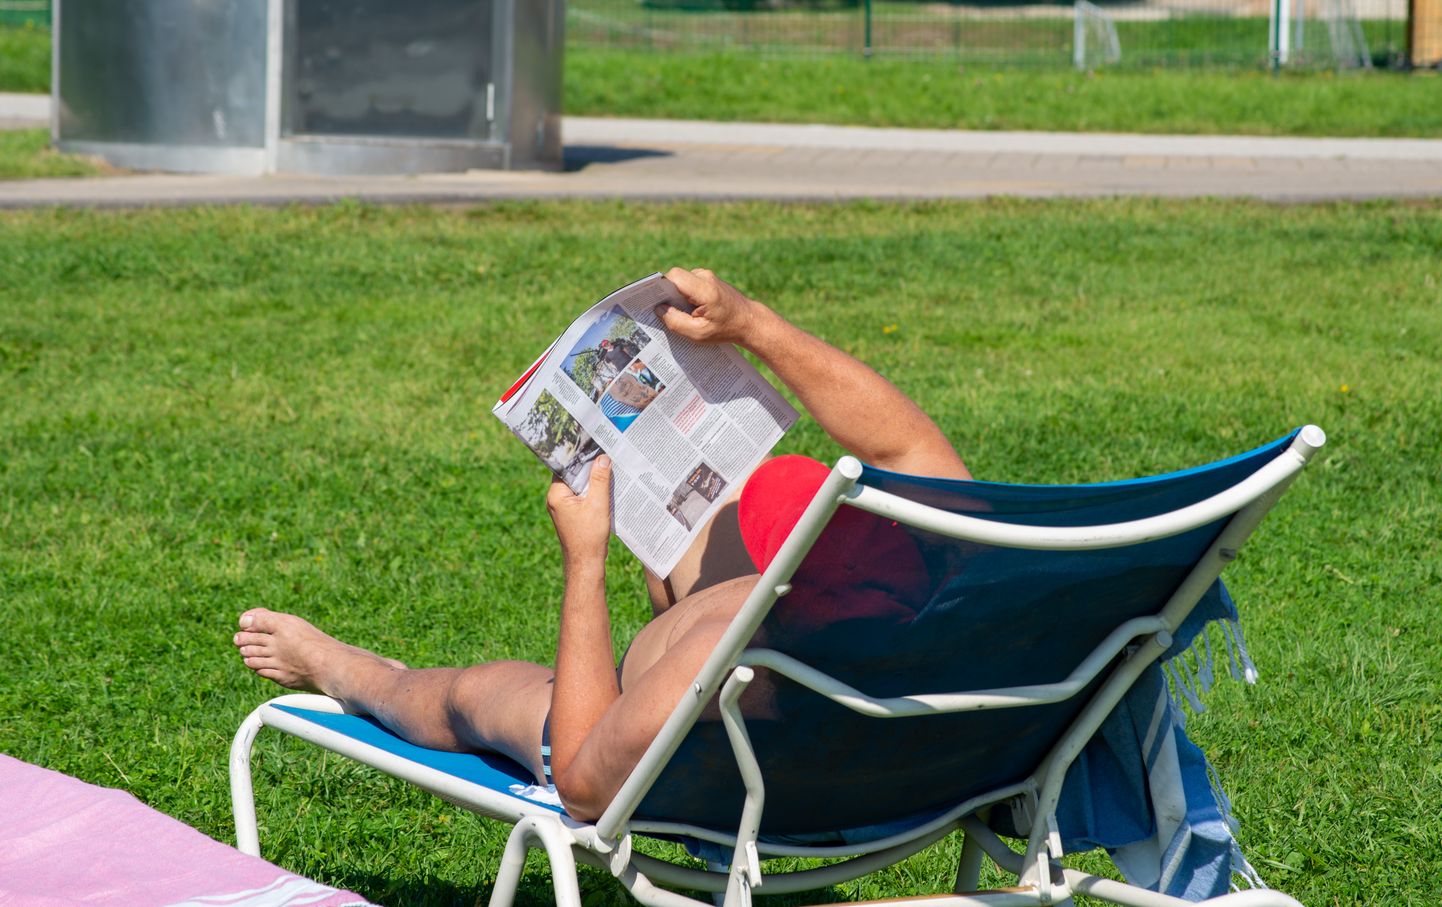 Inimene ajalehte lugemas ja sooja ilma nautimas